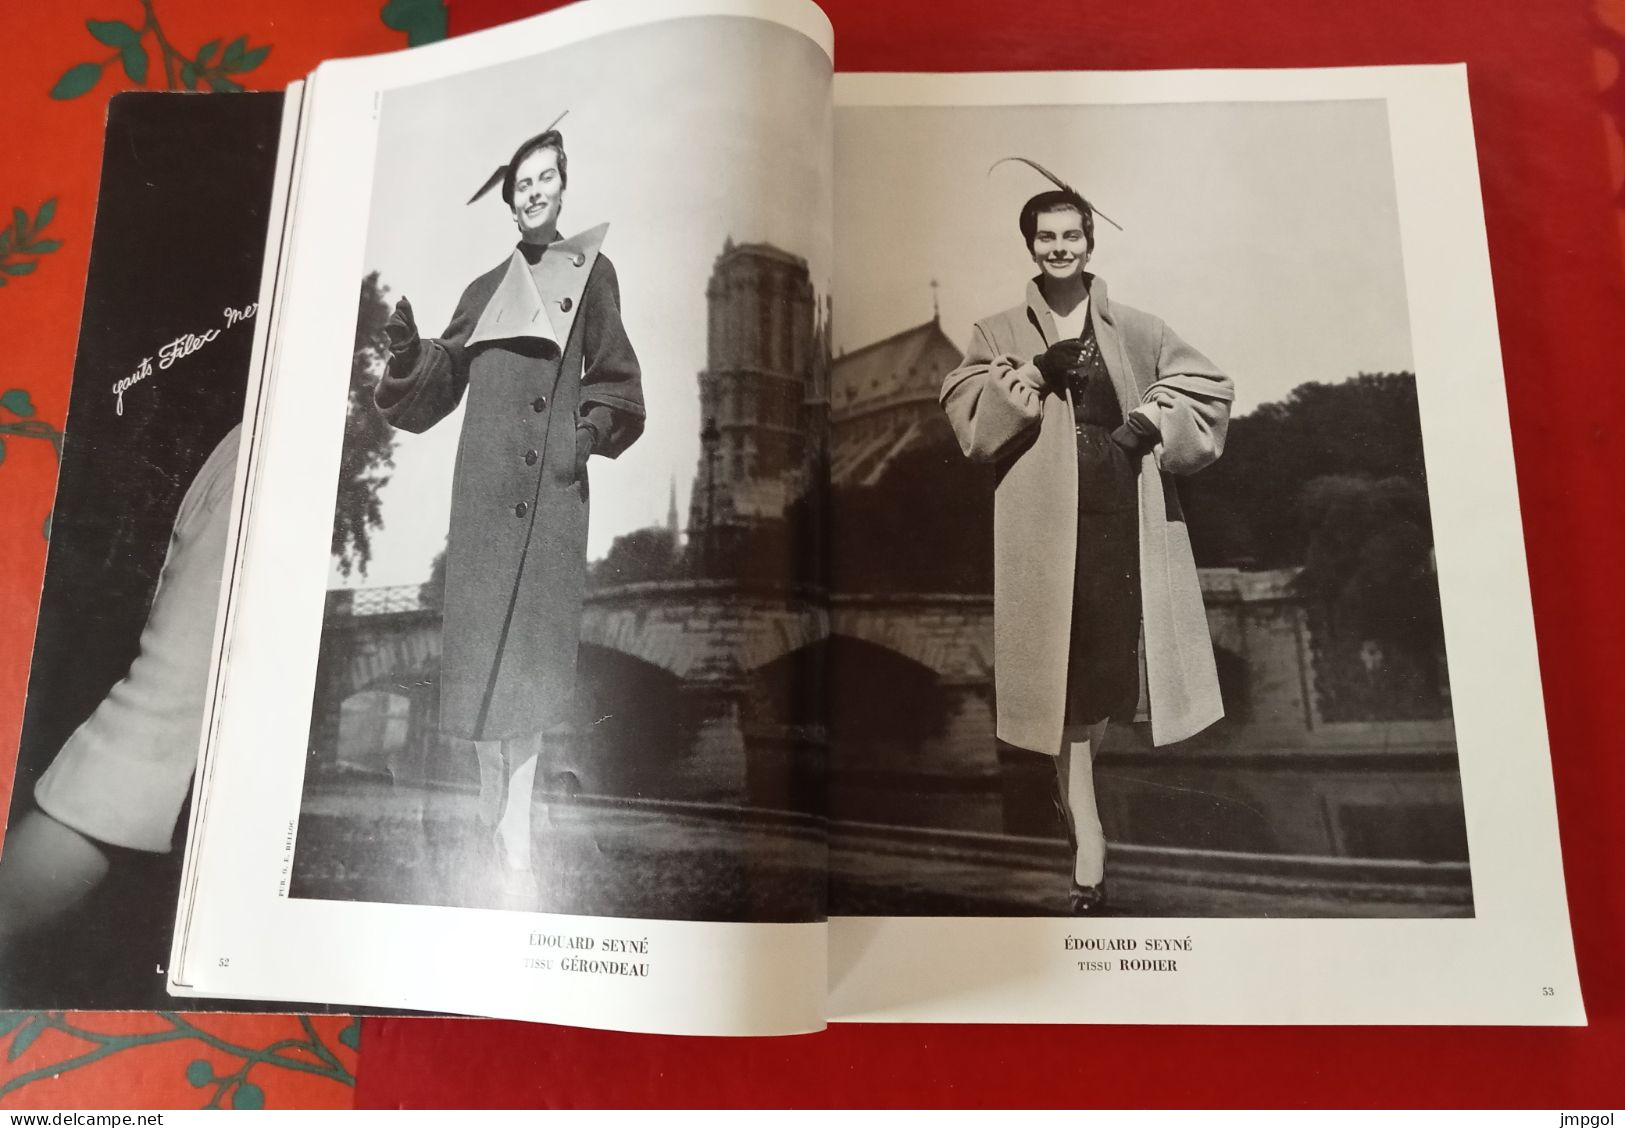 Officiel De La Mode Et De La Couture Paris Octobre 1951 Complément Collections  Hiver Dior Lanvin Patou Fath Balenciaga - Lifestyle & Mode